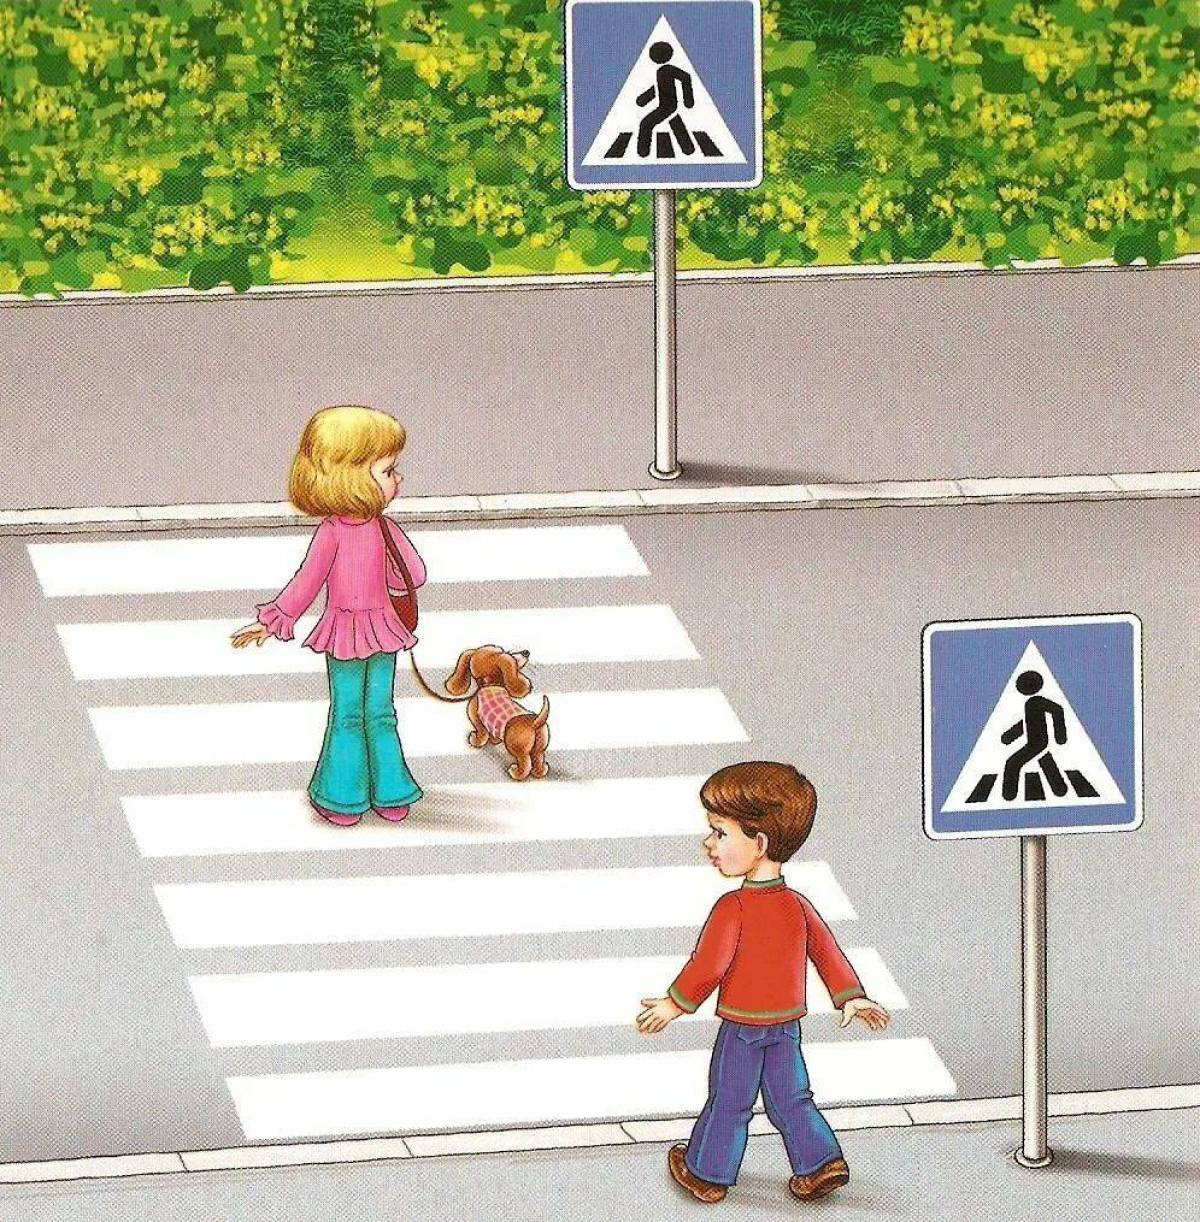 Беседа дети на дороге. Пешеходный переход для детей. Пешеходный переход картинка для детей. Дети пешеходы. Картина пешеходный переход для детей.